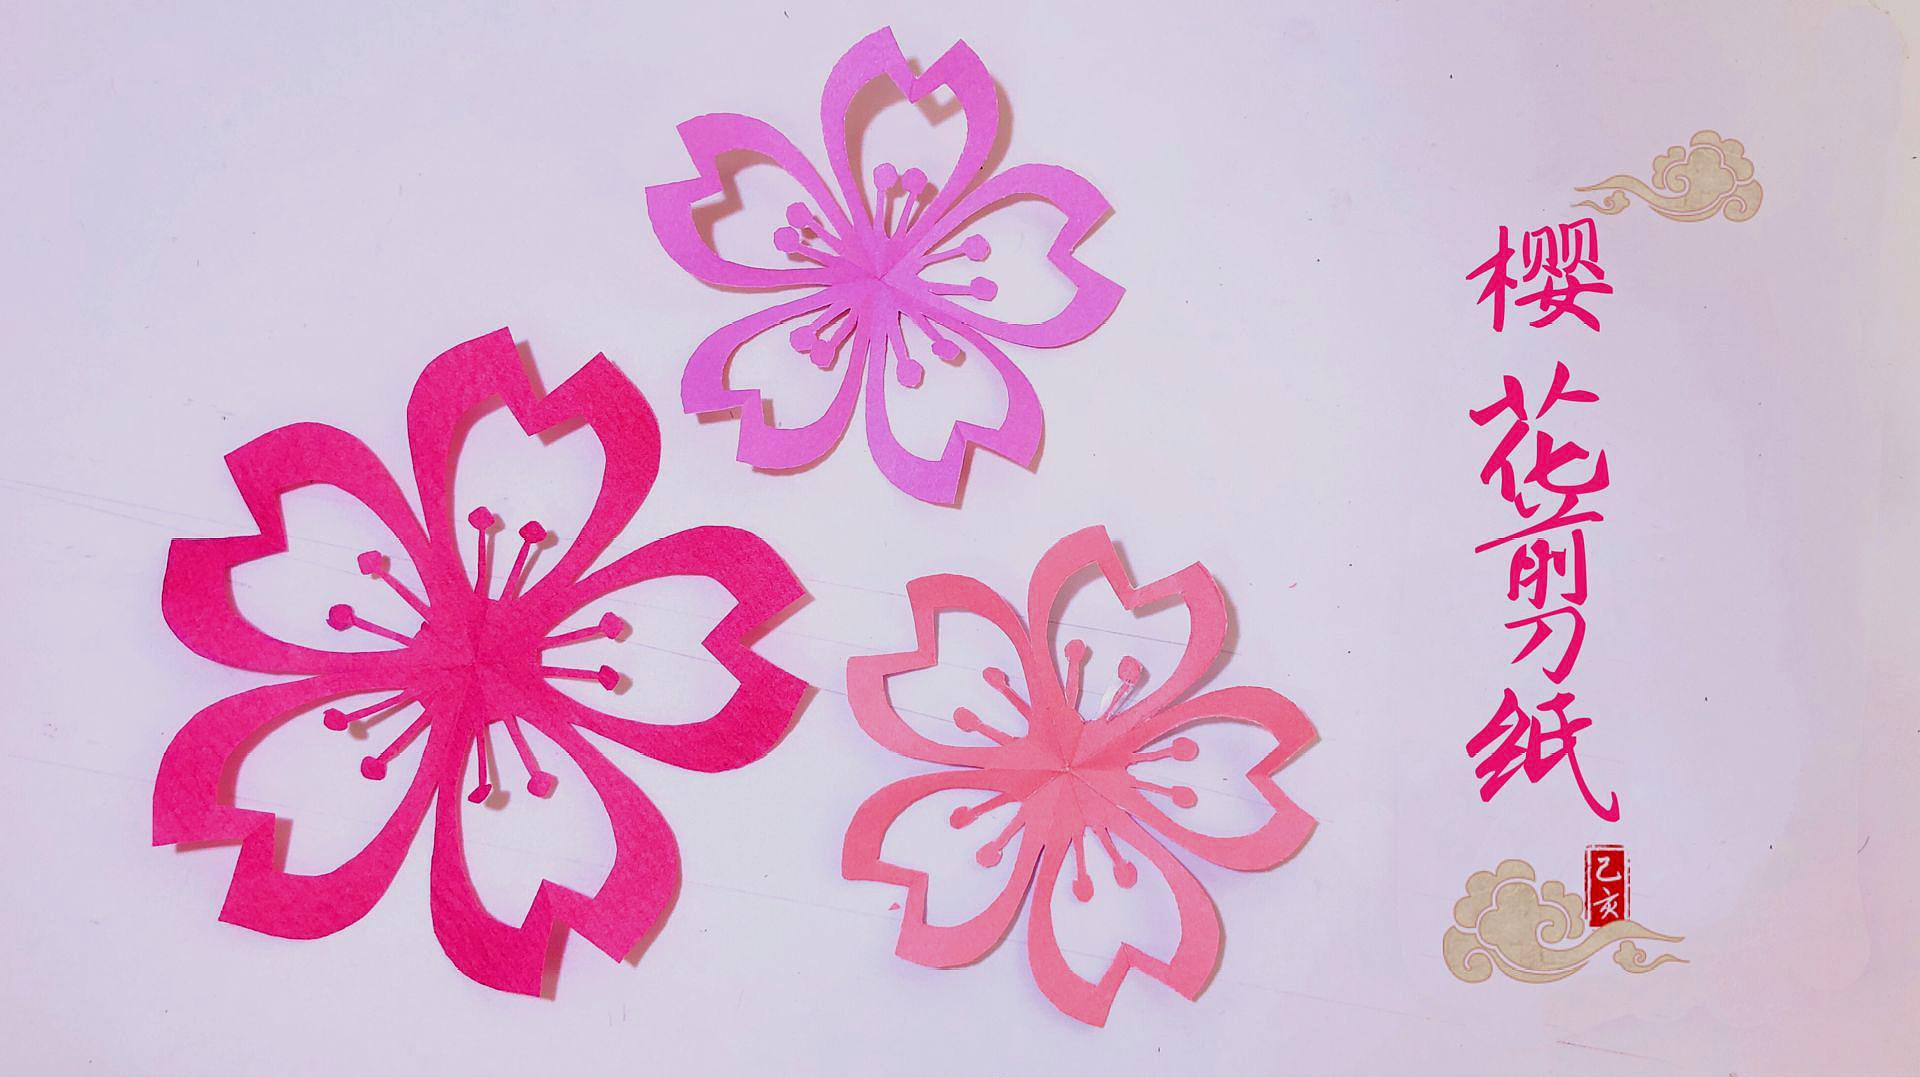 剪纸教程:超美的樱花剪纸手把手教会你,一起品味传统文化魅力